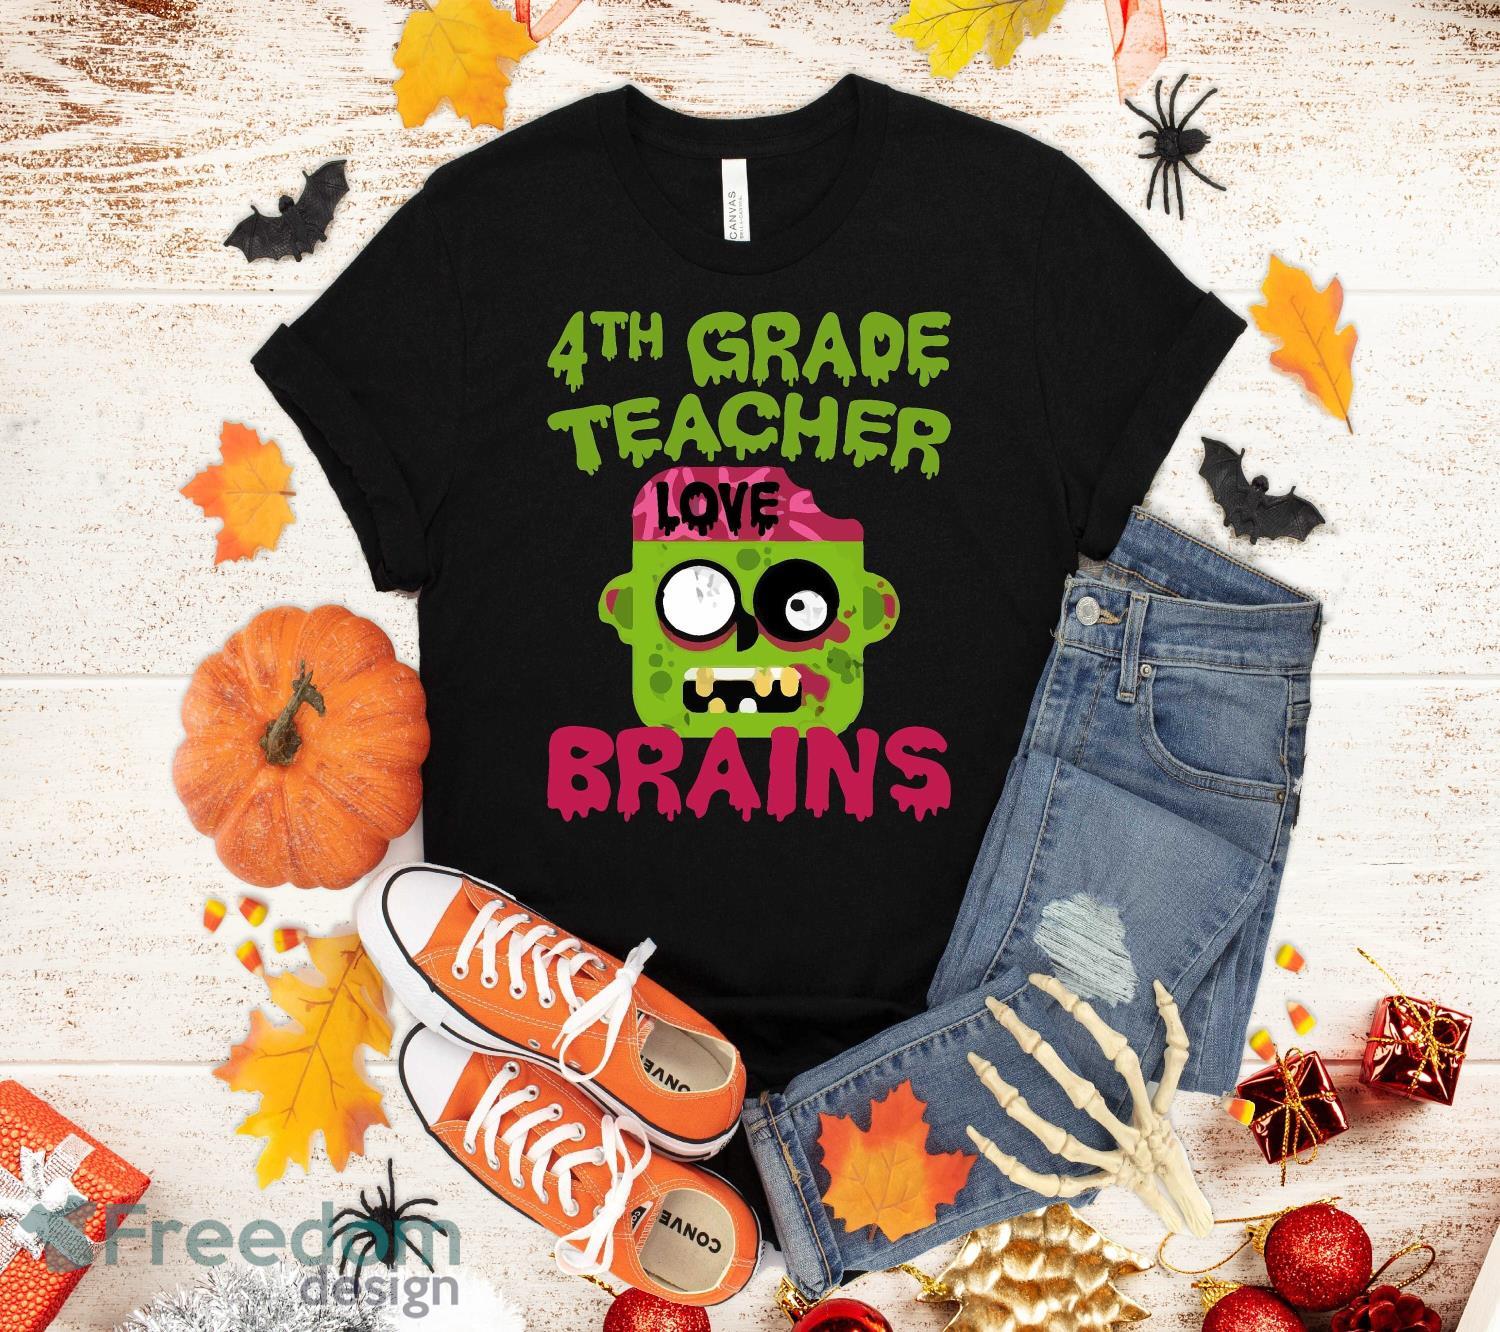 Knoglemarv blomst hold 4th Grade Teachers Love Brains Halloween Shirt For Men Women Girls Kids  Gift T-Shirt Halloween Gift - Freedomdesign